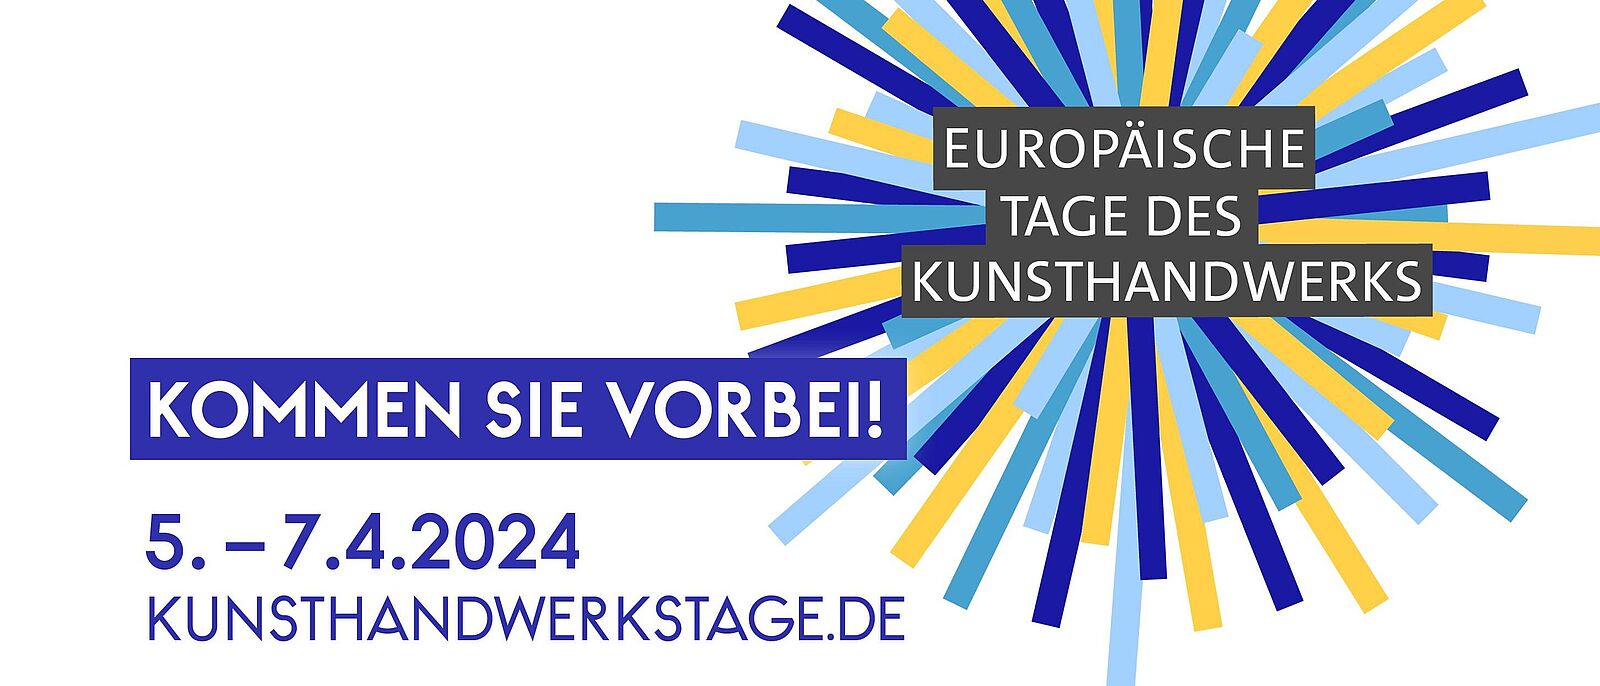 Logo des Europäischen Tag des Kunsthandwerks, darauf der Schriftzug in drei Zeilen: Kommen Sie vorbei! 5.–7.4.2024 Kunsthandwerkstage.de